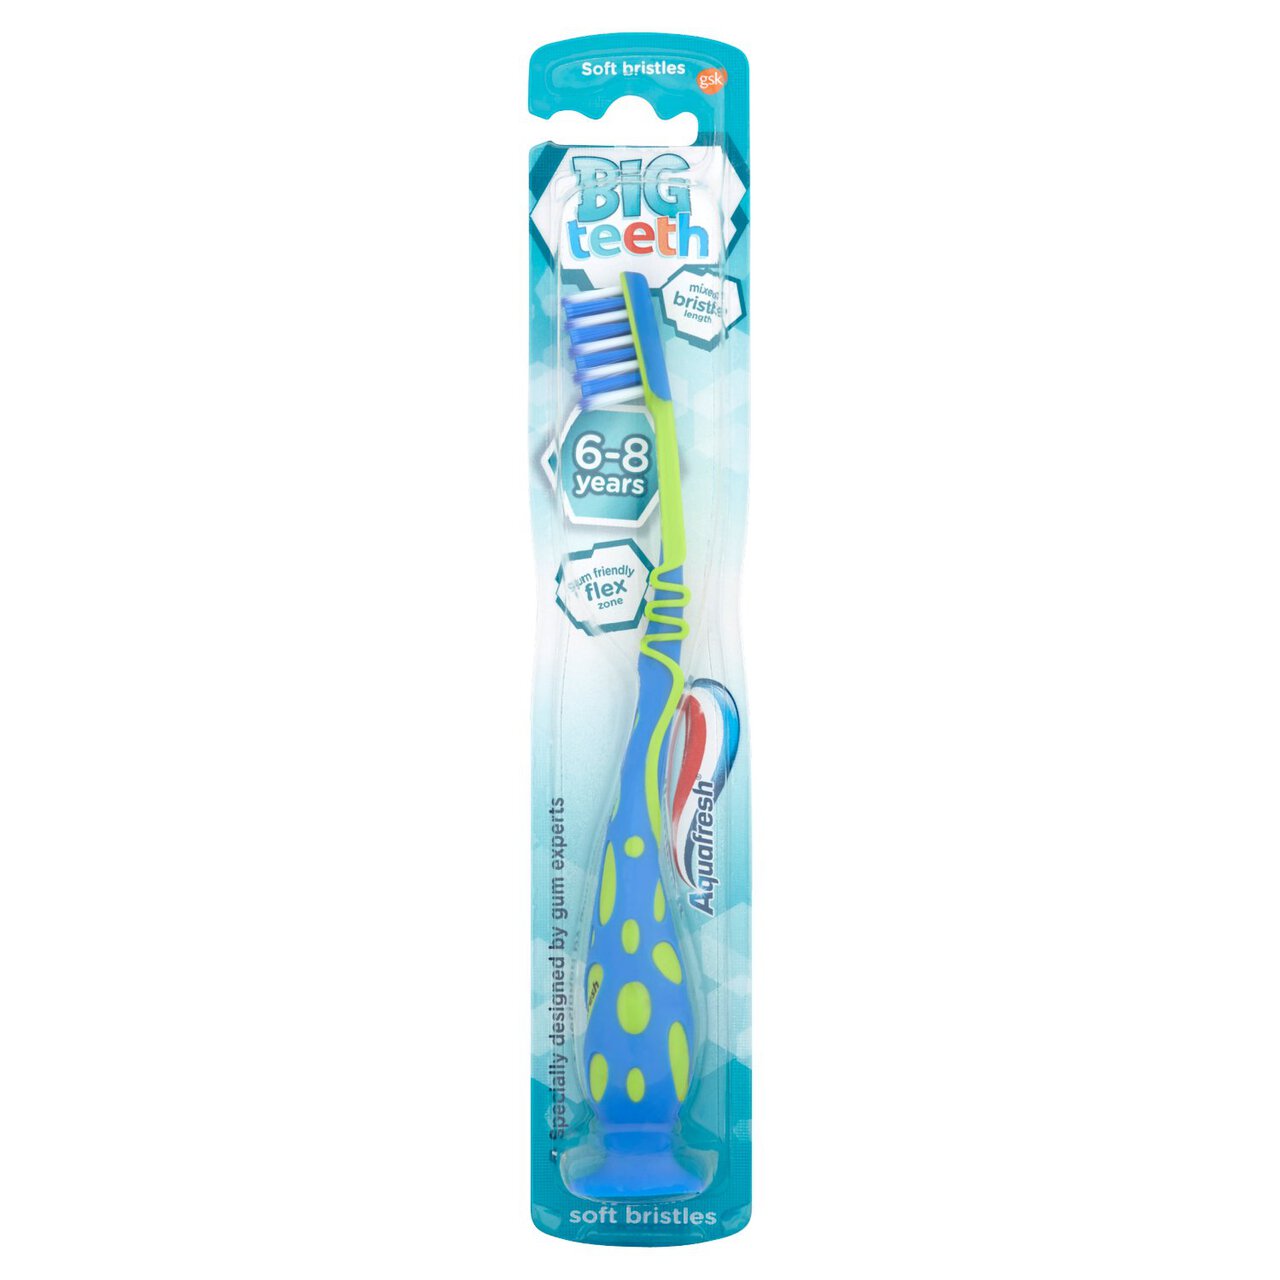 Aquafresh Big Teeth 6-8 Years Kids Soft Toothbrush